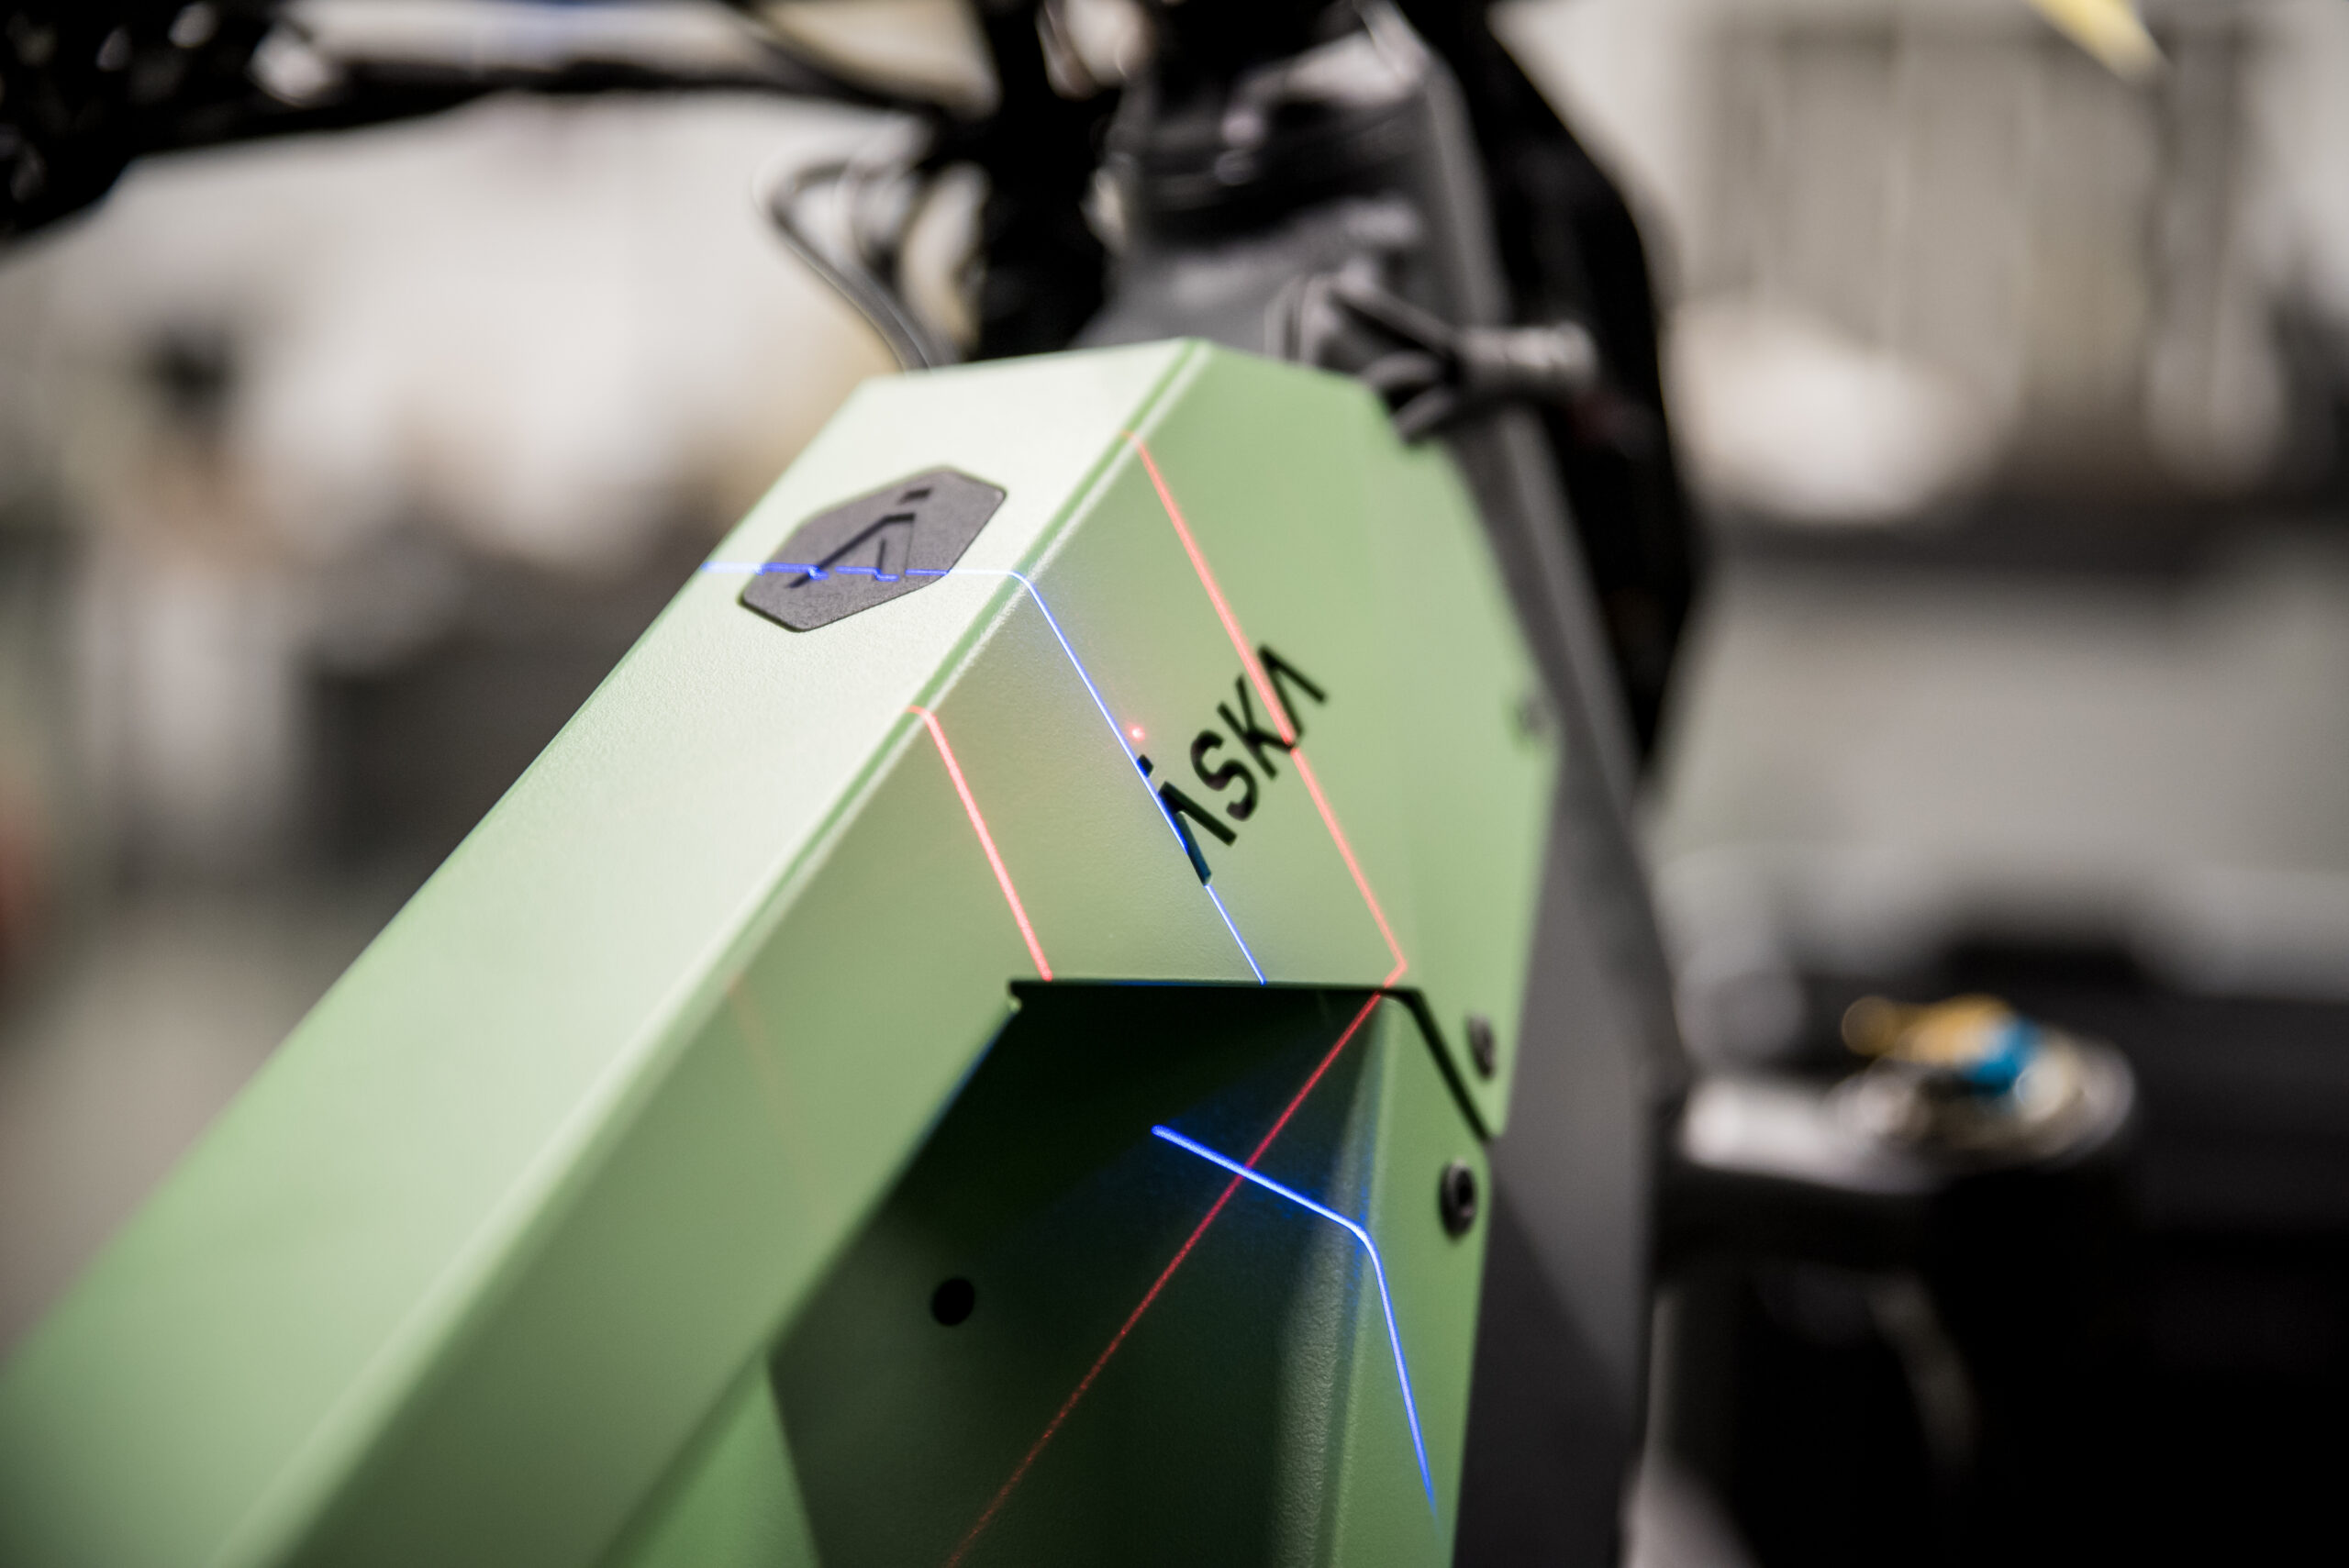 Le ModelMaker H120 en action, scannant le cadre du vélo, couvert par une garantie de 5 ans.